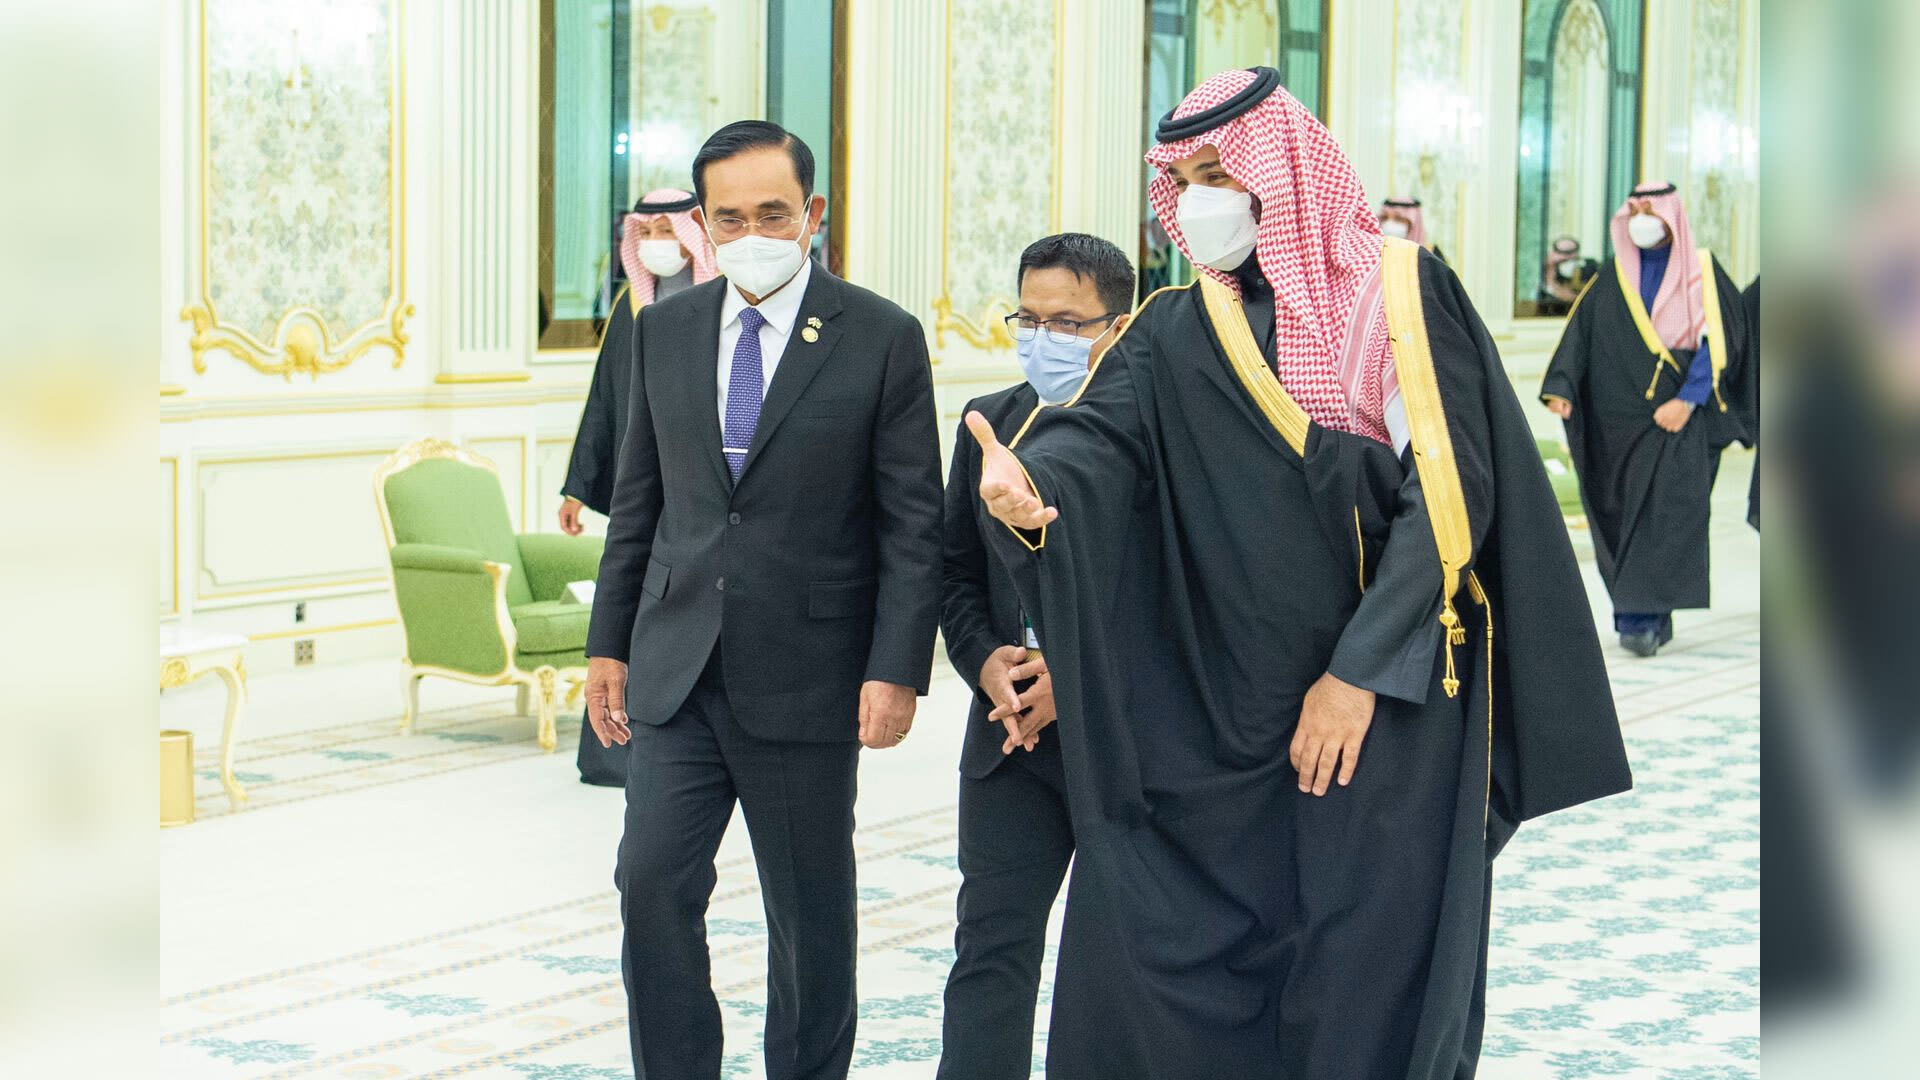 رئيس وزراء تايلاند في السعودية بعد عقود من اغتيالات و"فضيحة الماسة الزرقاء".. ما قصتها؟